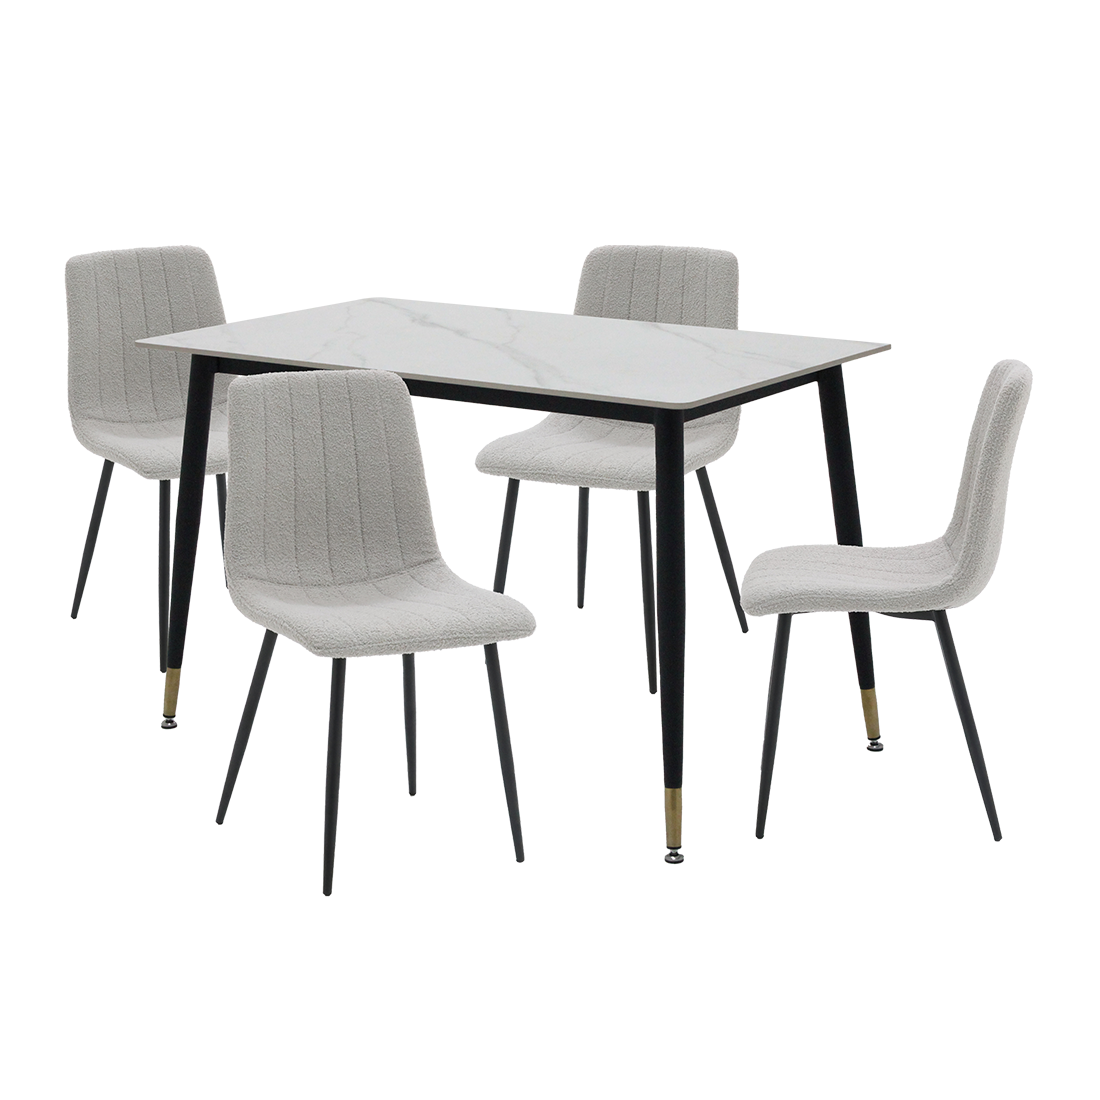 ชุดโต๊ะอาหารรุ่น Charisma สีขาว & เก้าอี้ Layko สีเทา x401